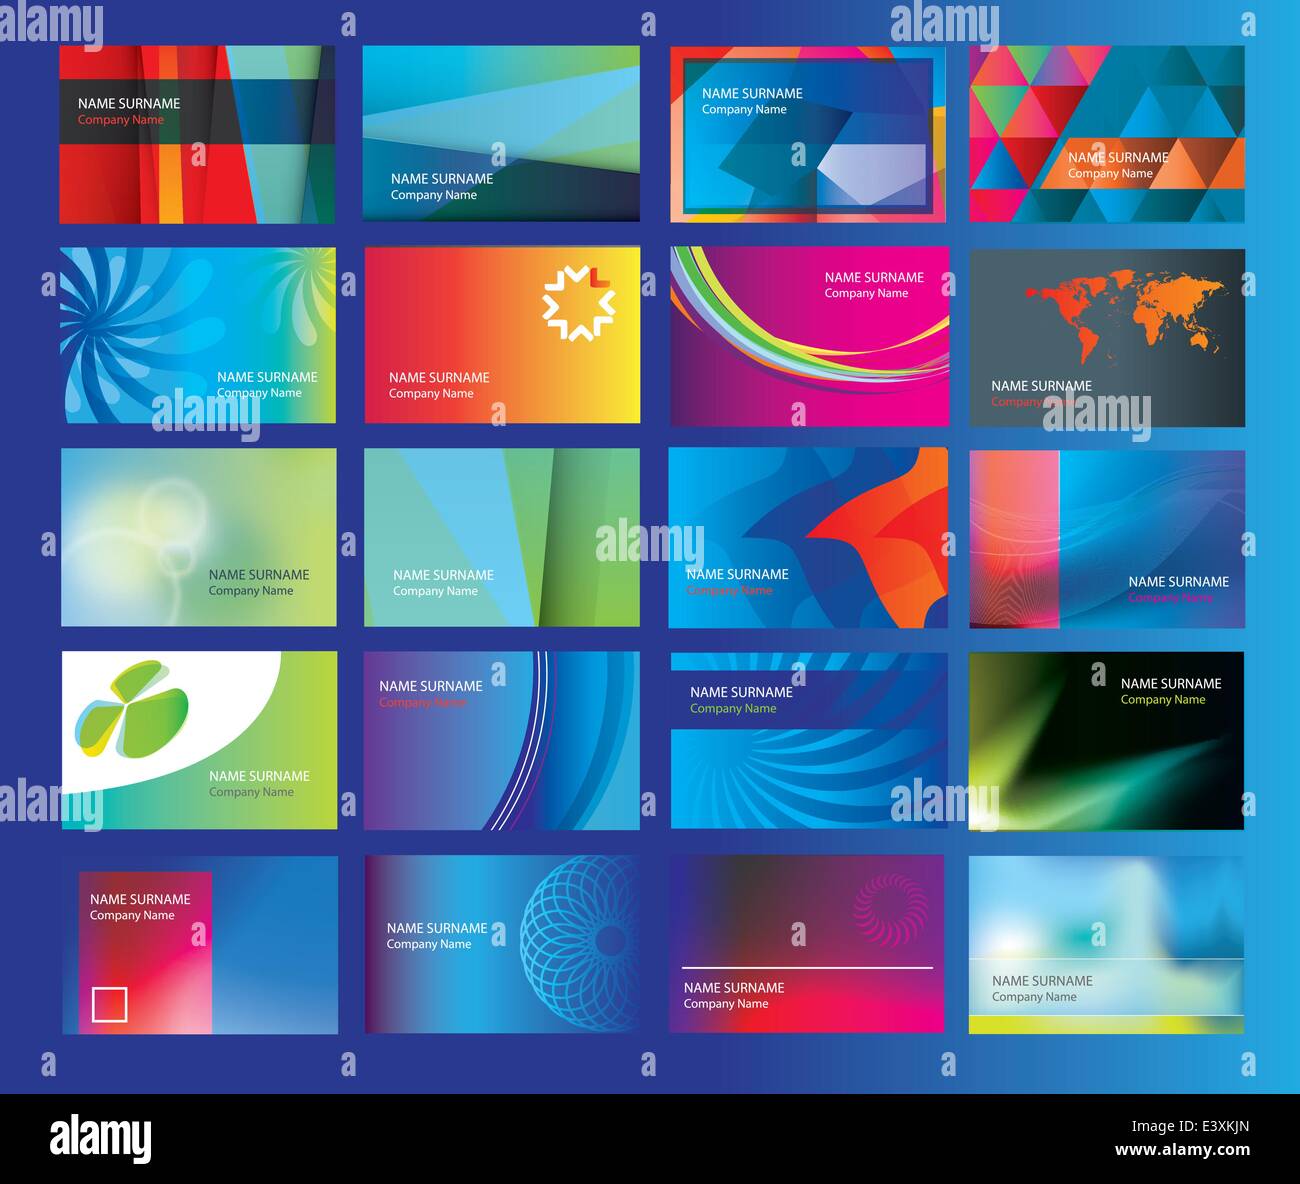 Sammlung von Visitenkarten für ein neues branding, moderne neue Business Start-Ups und Unternehmen, Vektor-illustration Stock Vektor